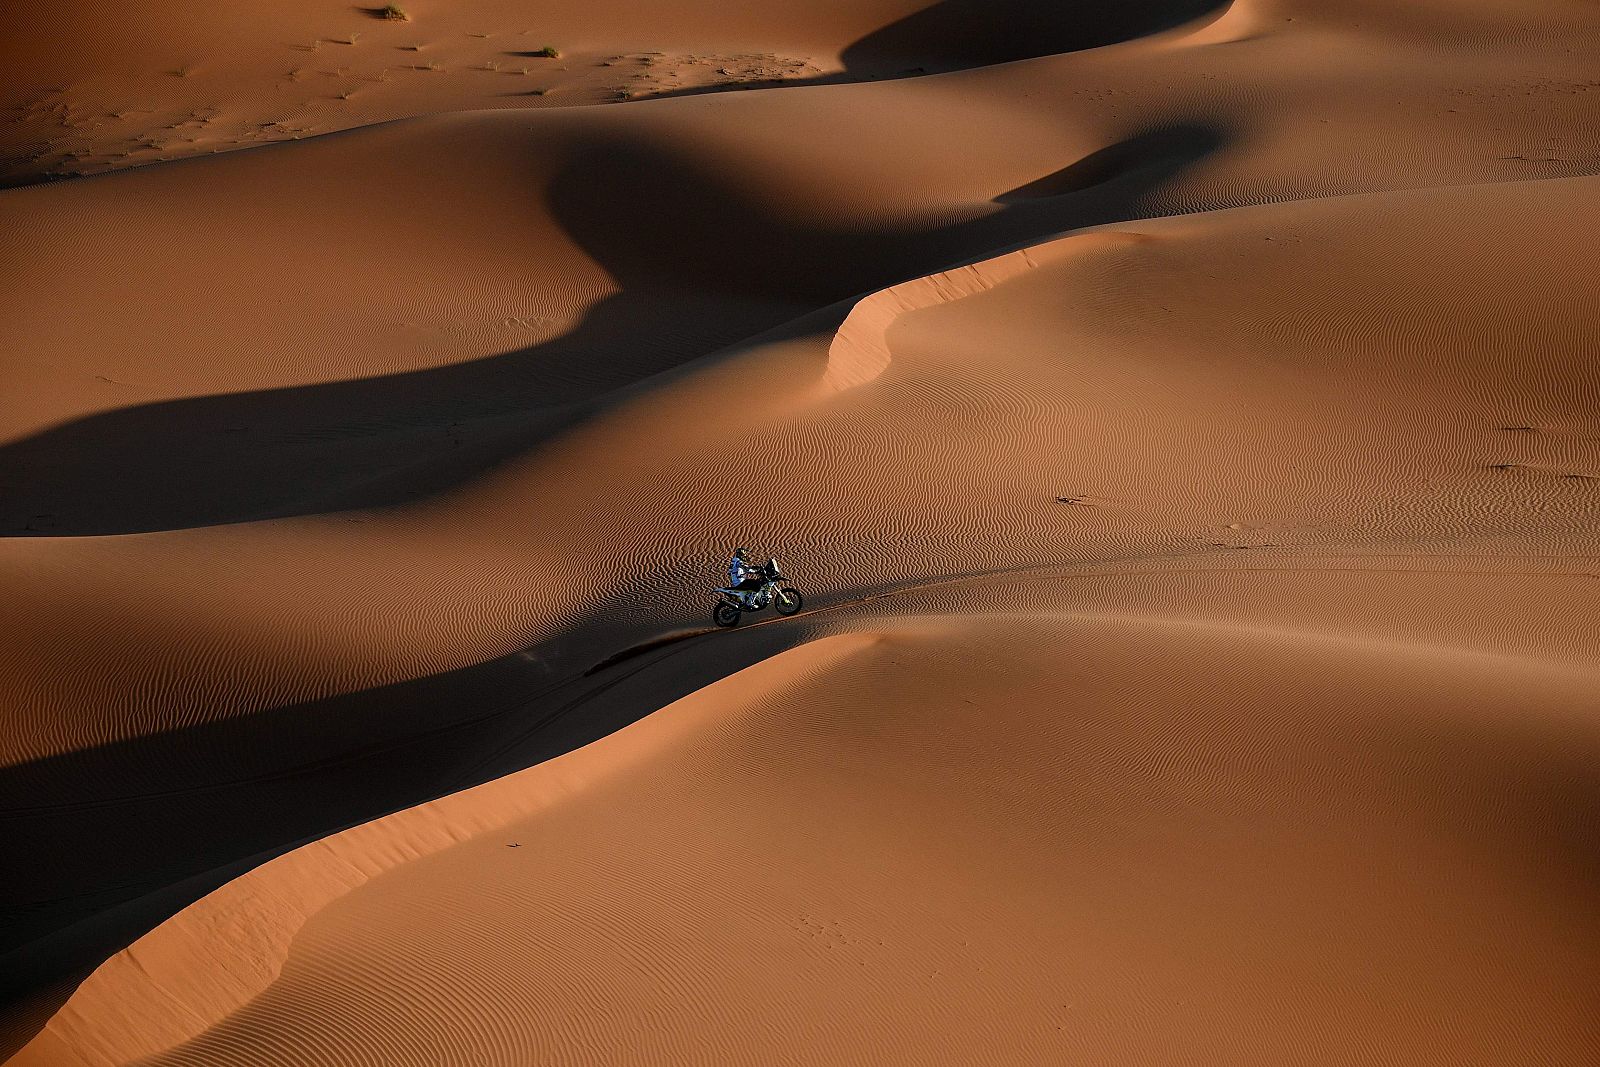 Vista aérea del motociclista Quintanilla, durante una etapa del Dakar 2020 en pleno desierto